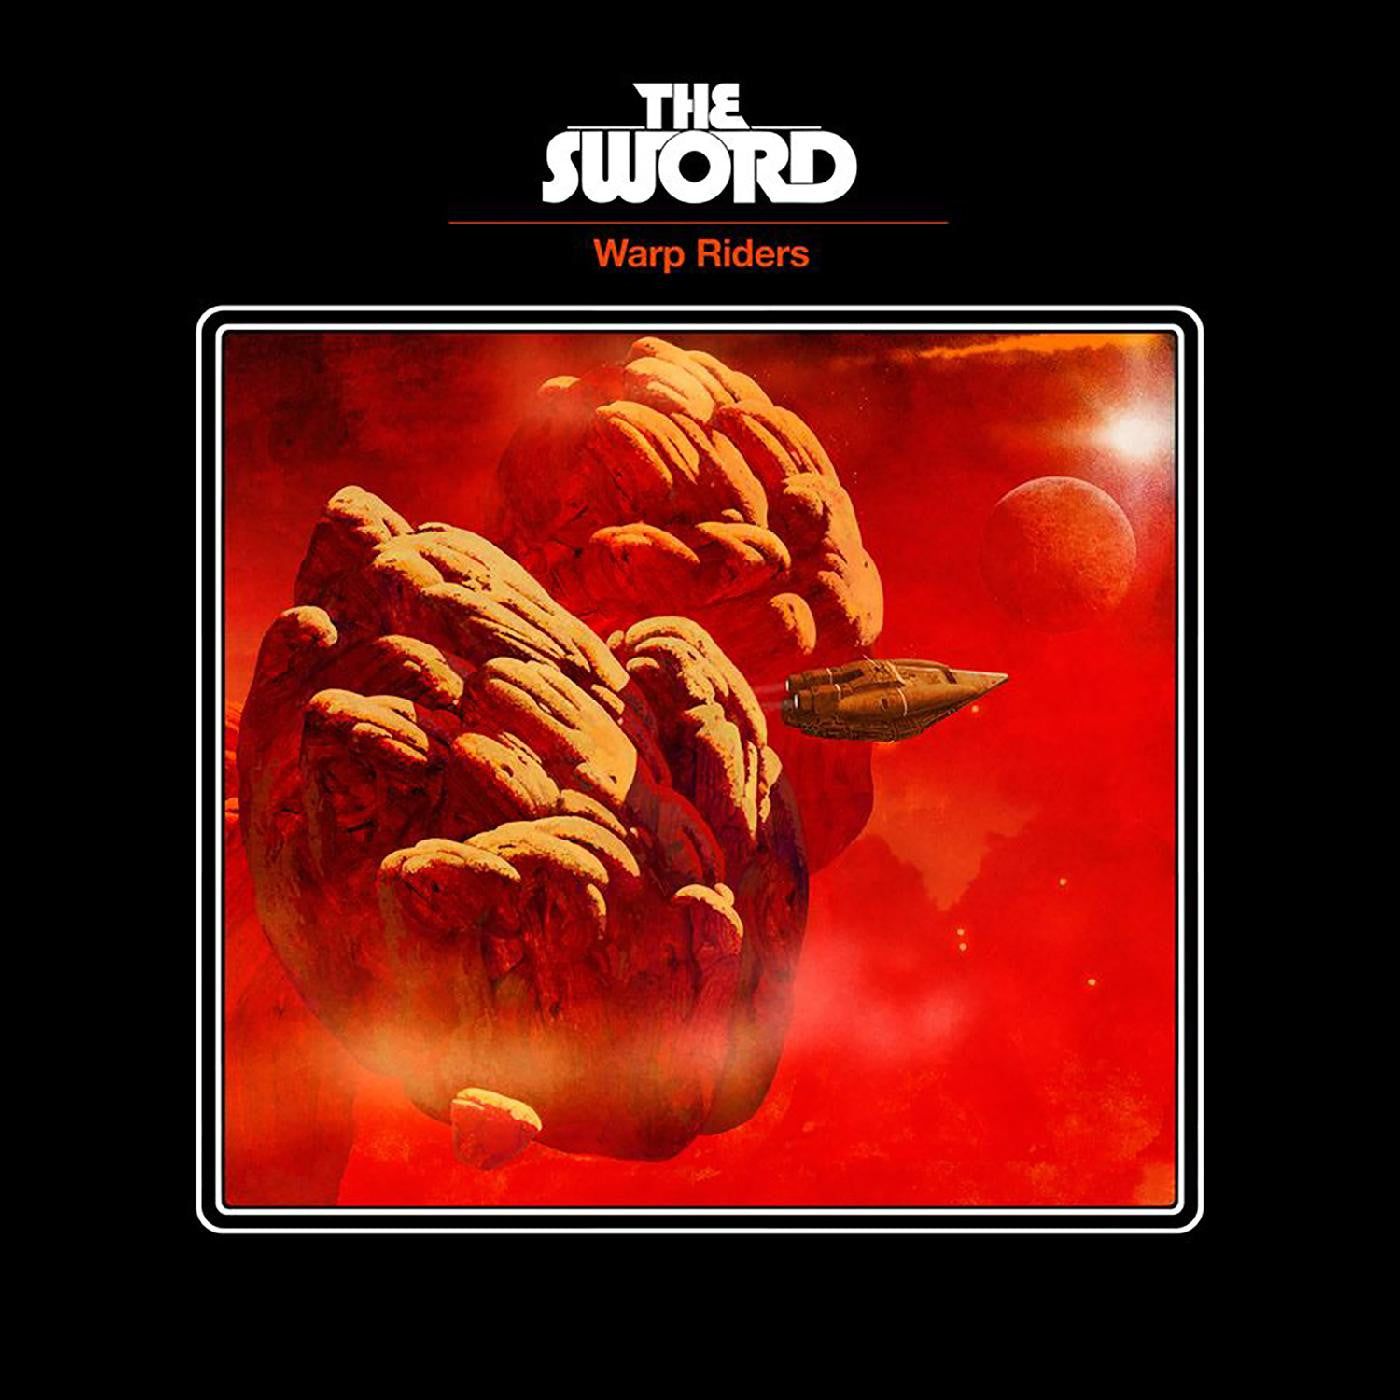 SWORD, THE - WARP RIDERS Vinyl LP